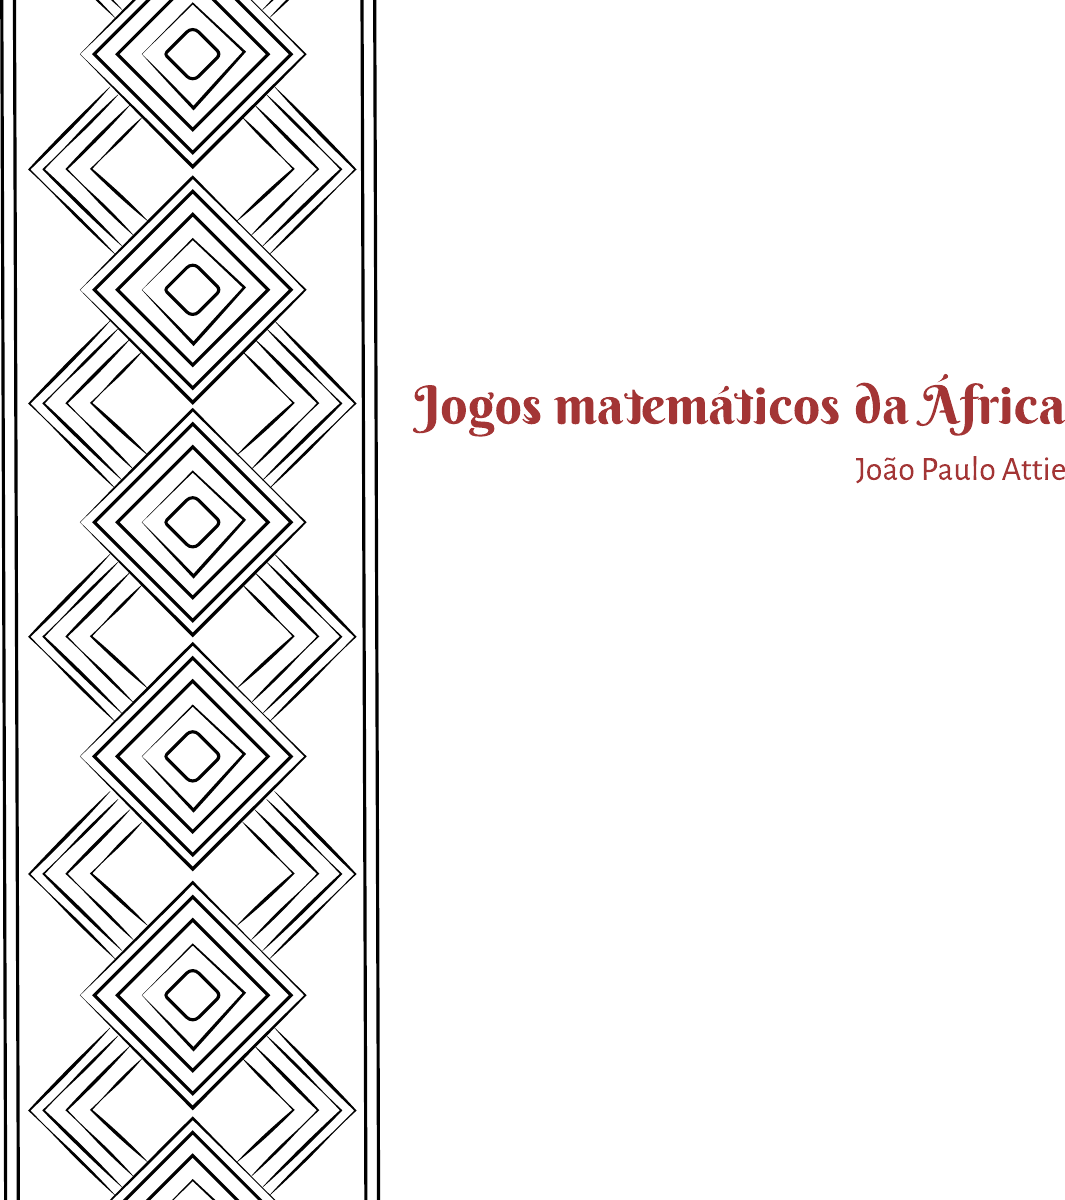 Jogos africanos e sua lógica na aula de matemática – Colégio Bonfim